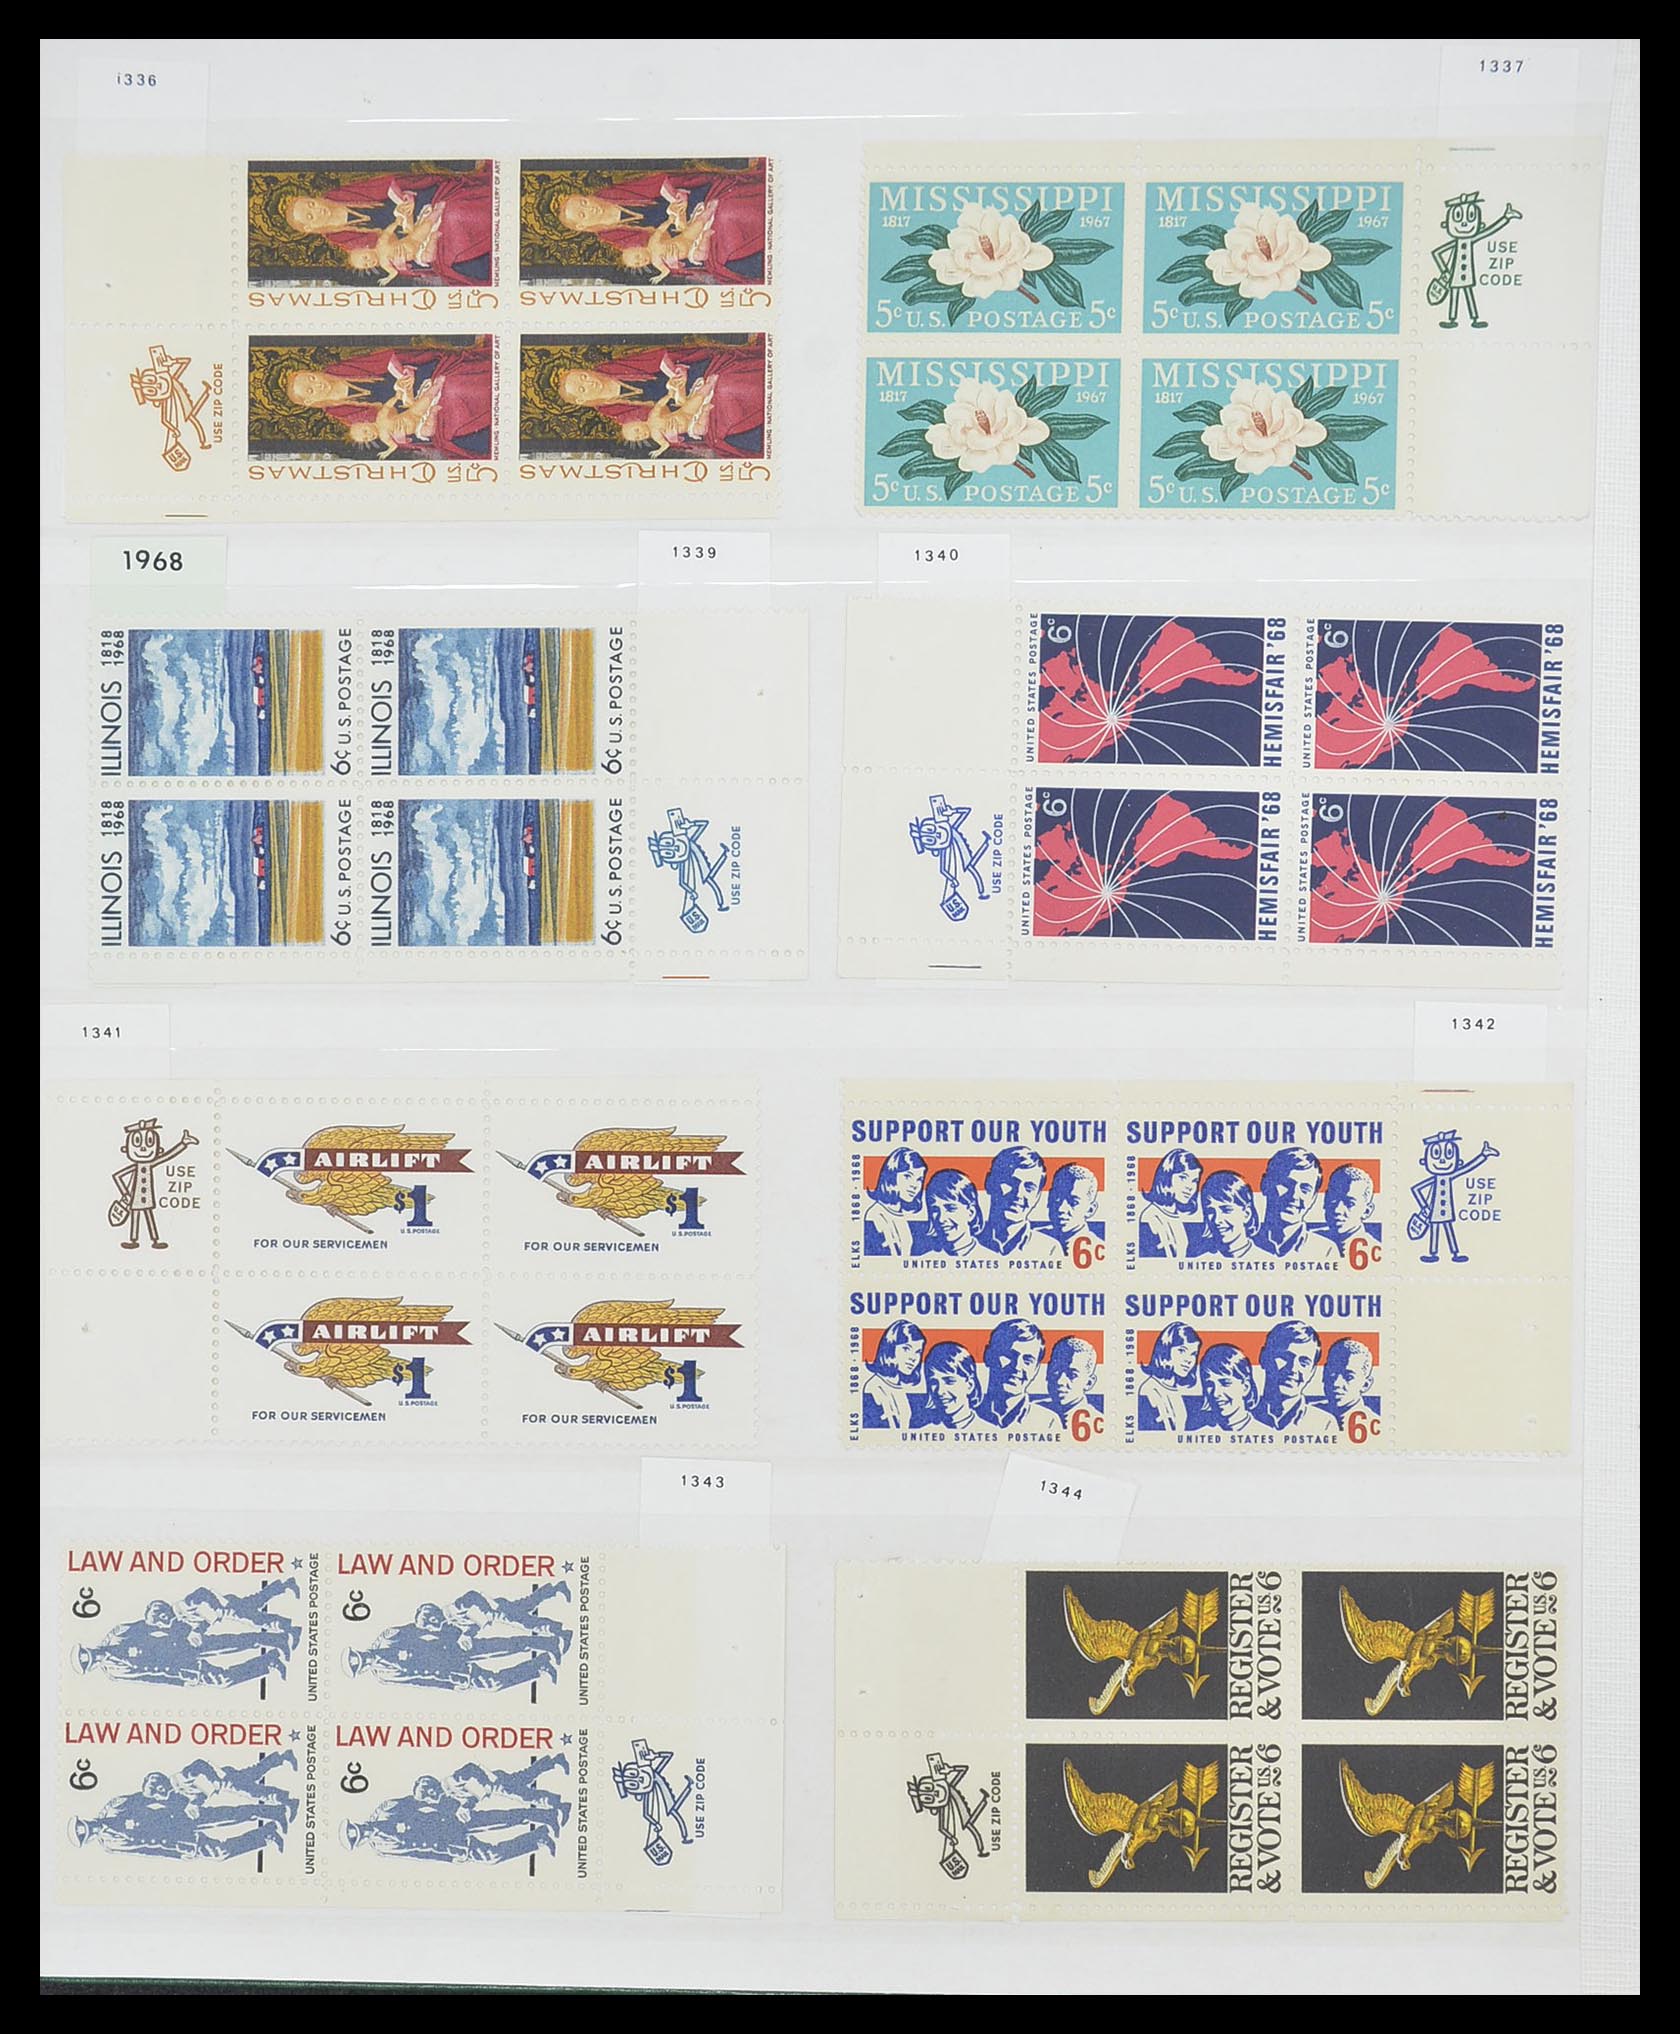 33904 024 - Stamp collection 33904 USA 1938-1998.